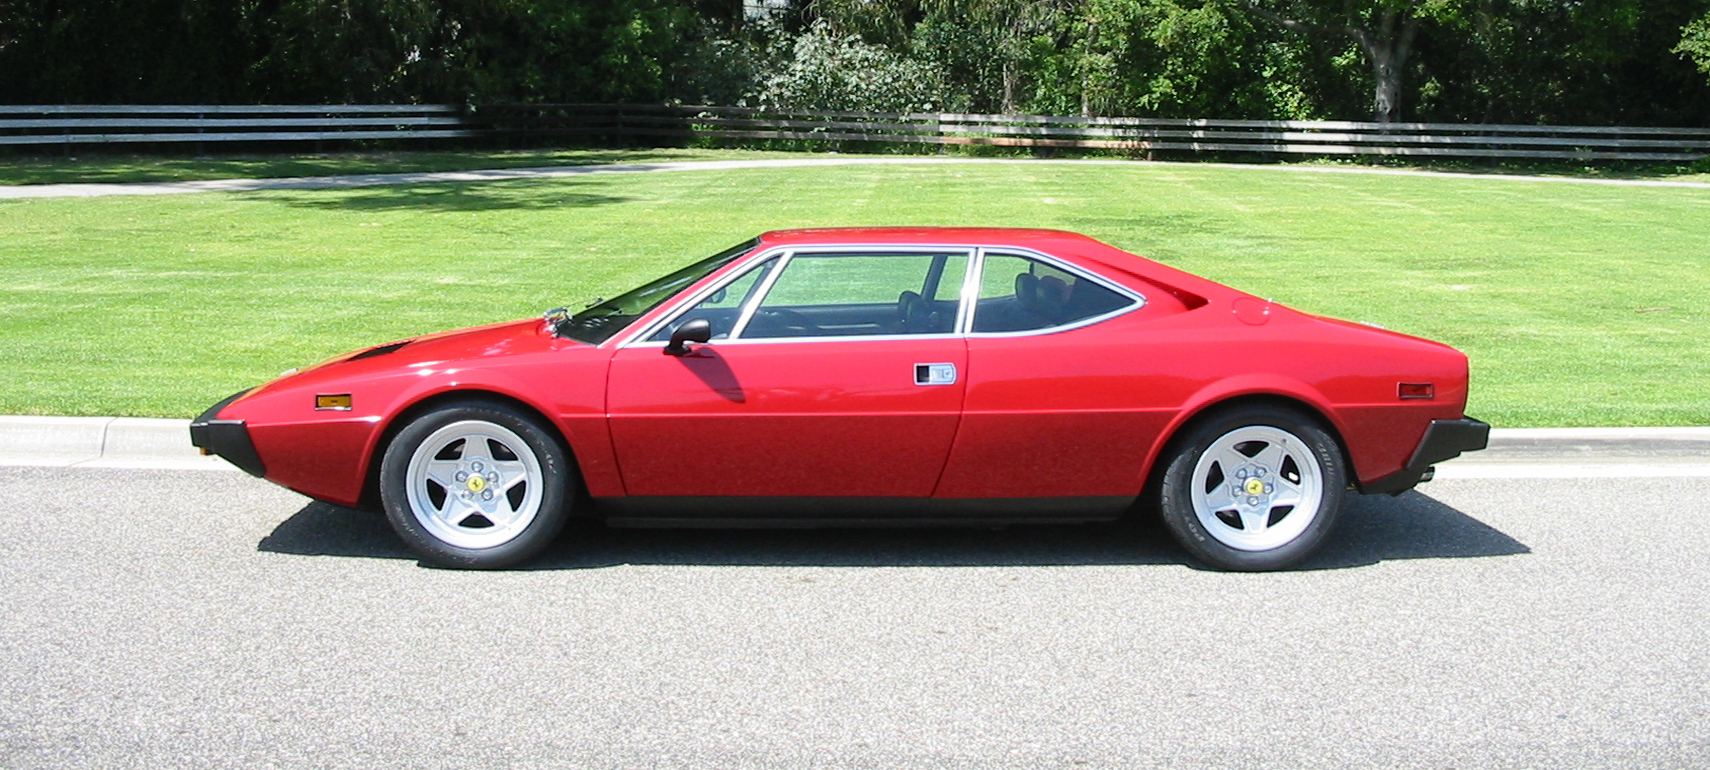 Ferrari 308 GT/4 und 208 GT/4 Dino Kofferraum Bj. 1973-1980 Euro-Version